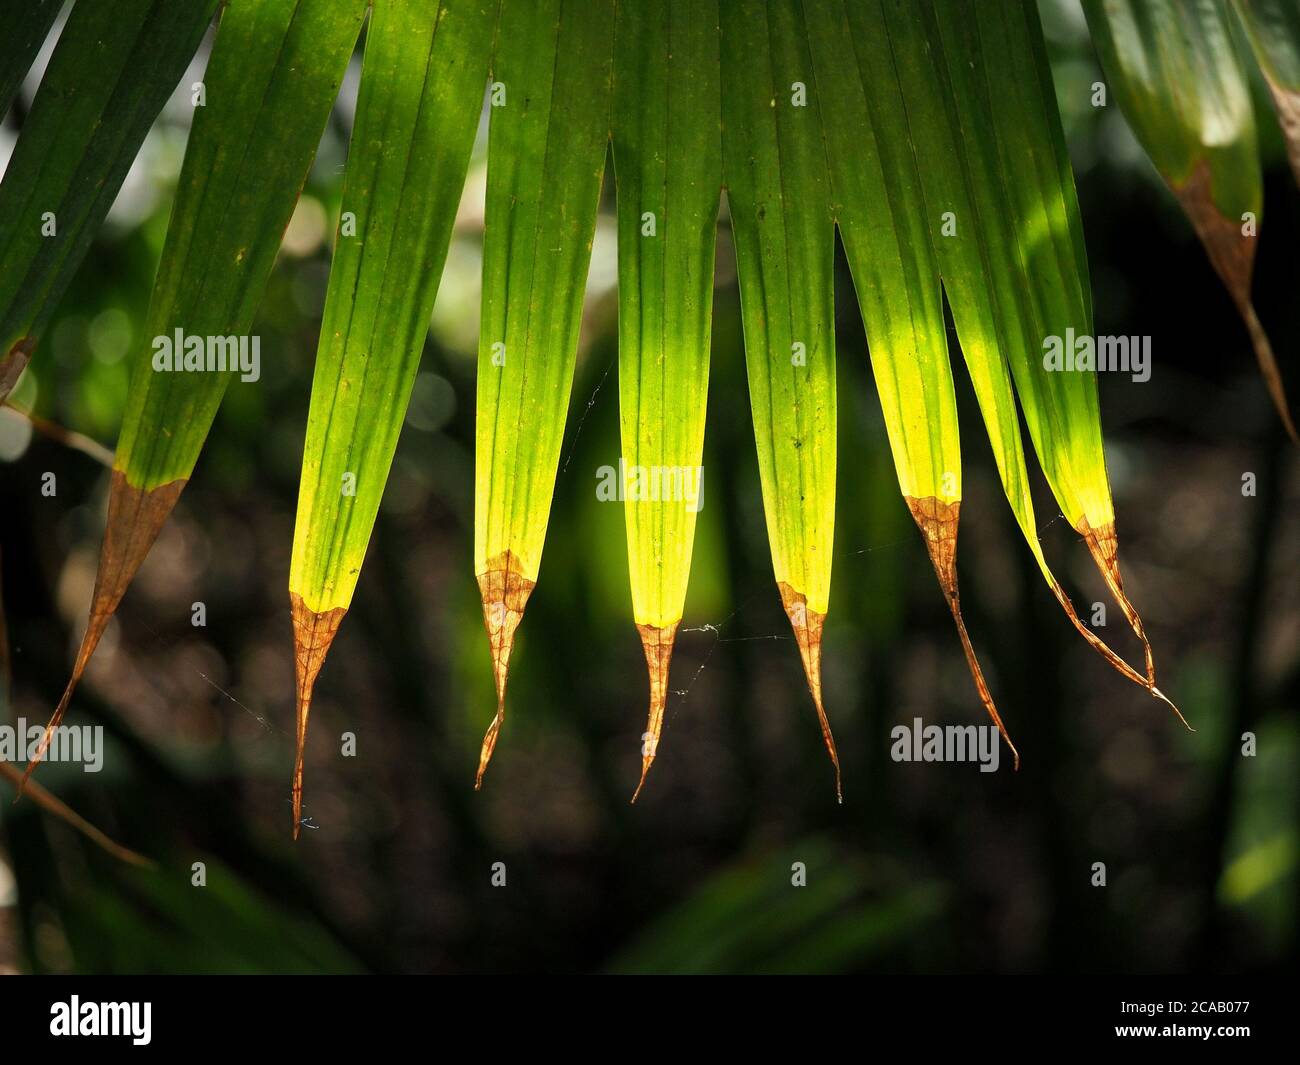 Foglie di palma striate verdi con punte marroni asciutte illuminano con retroilluminazione in una serra in Inghilterra, Regno Unito Foto Stock